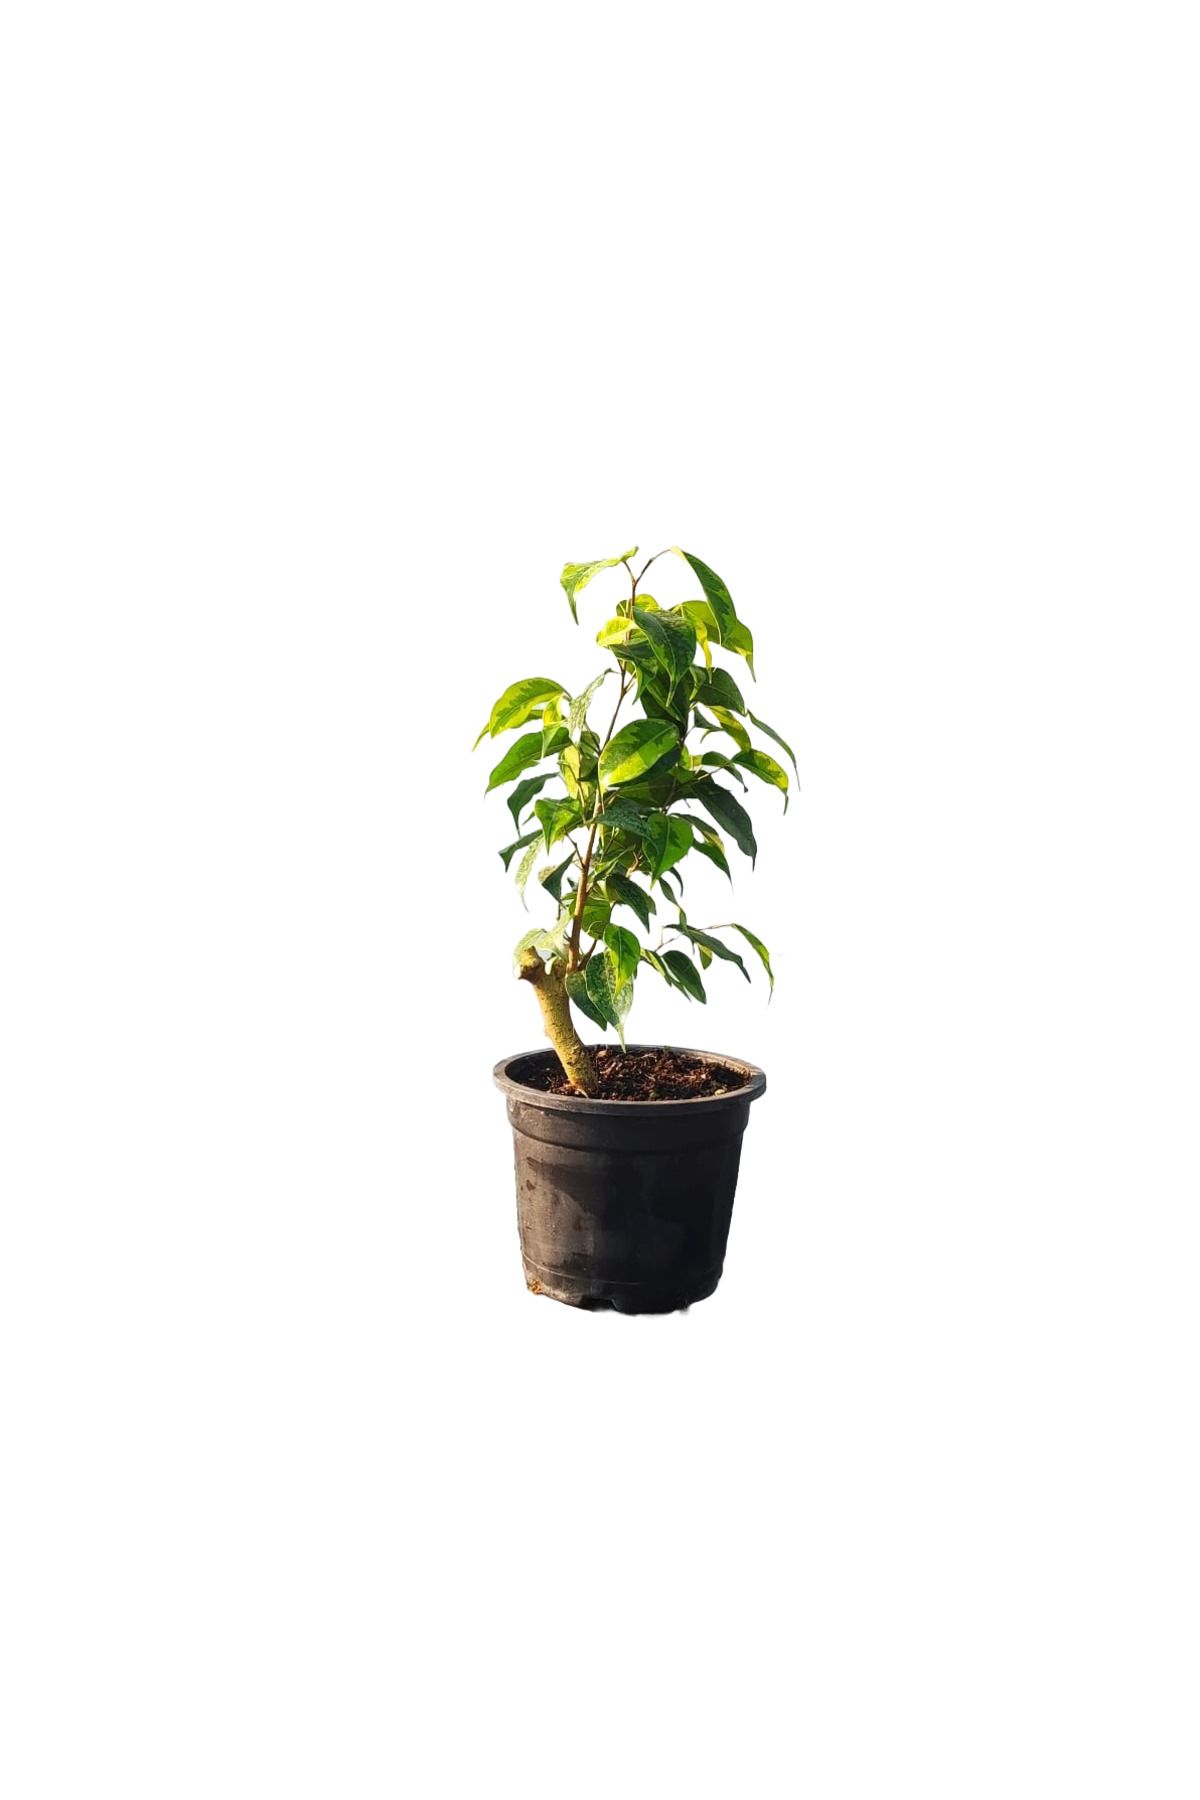 Benjamin bitkisi yeşil beyaz yapraklı - EV BİTKİSİ , SALON BİTKİSİ , OFIS BİTKİSİ